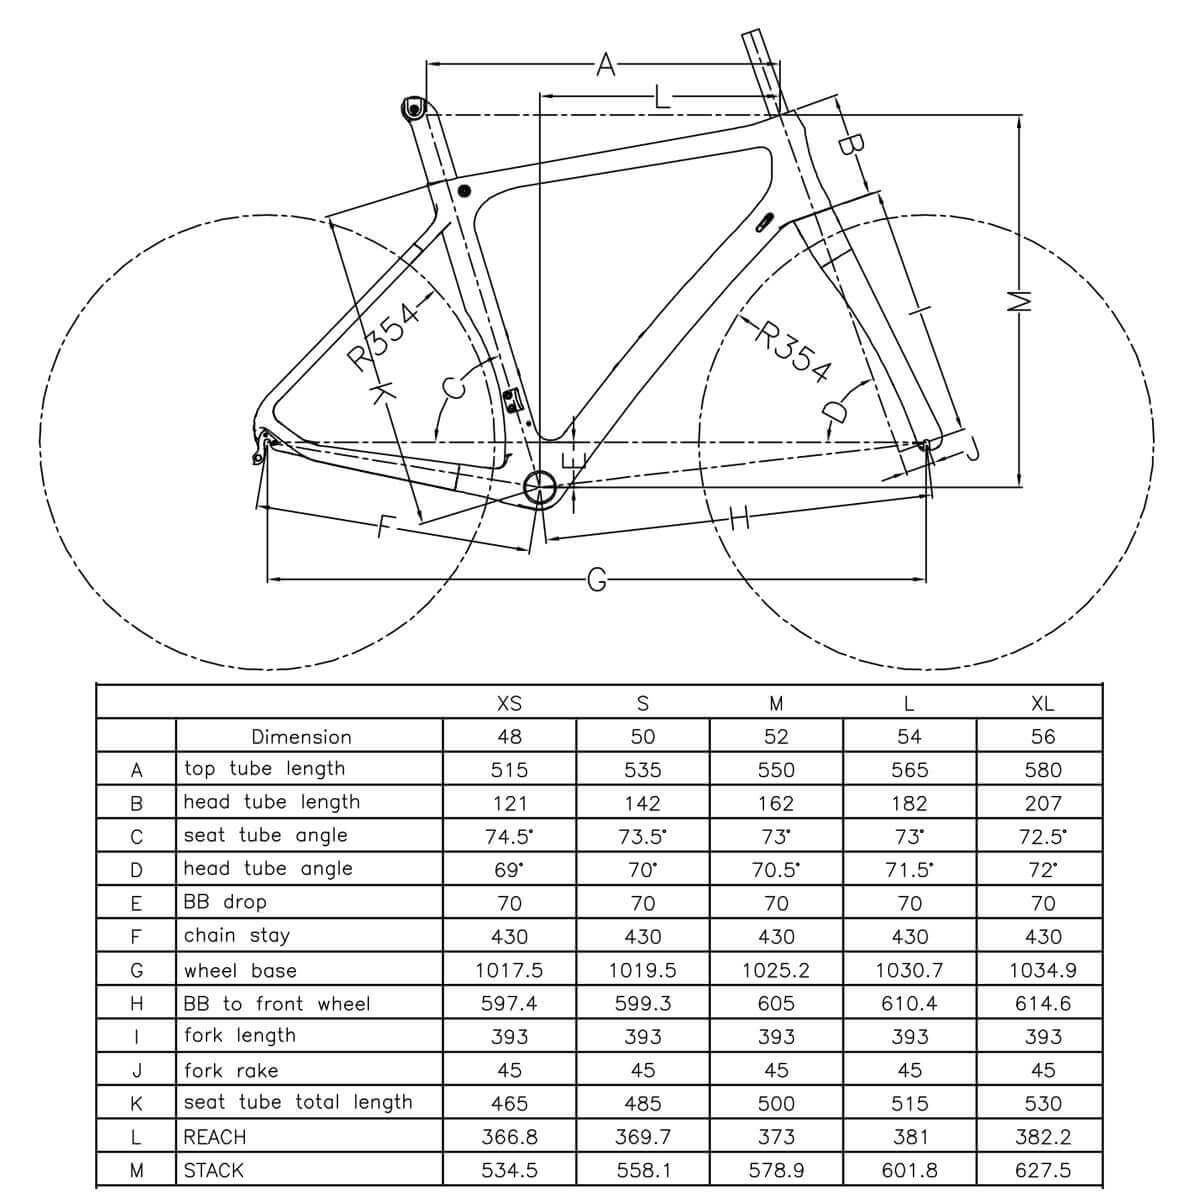 Вес рамы велосипеда